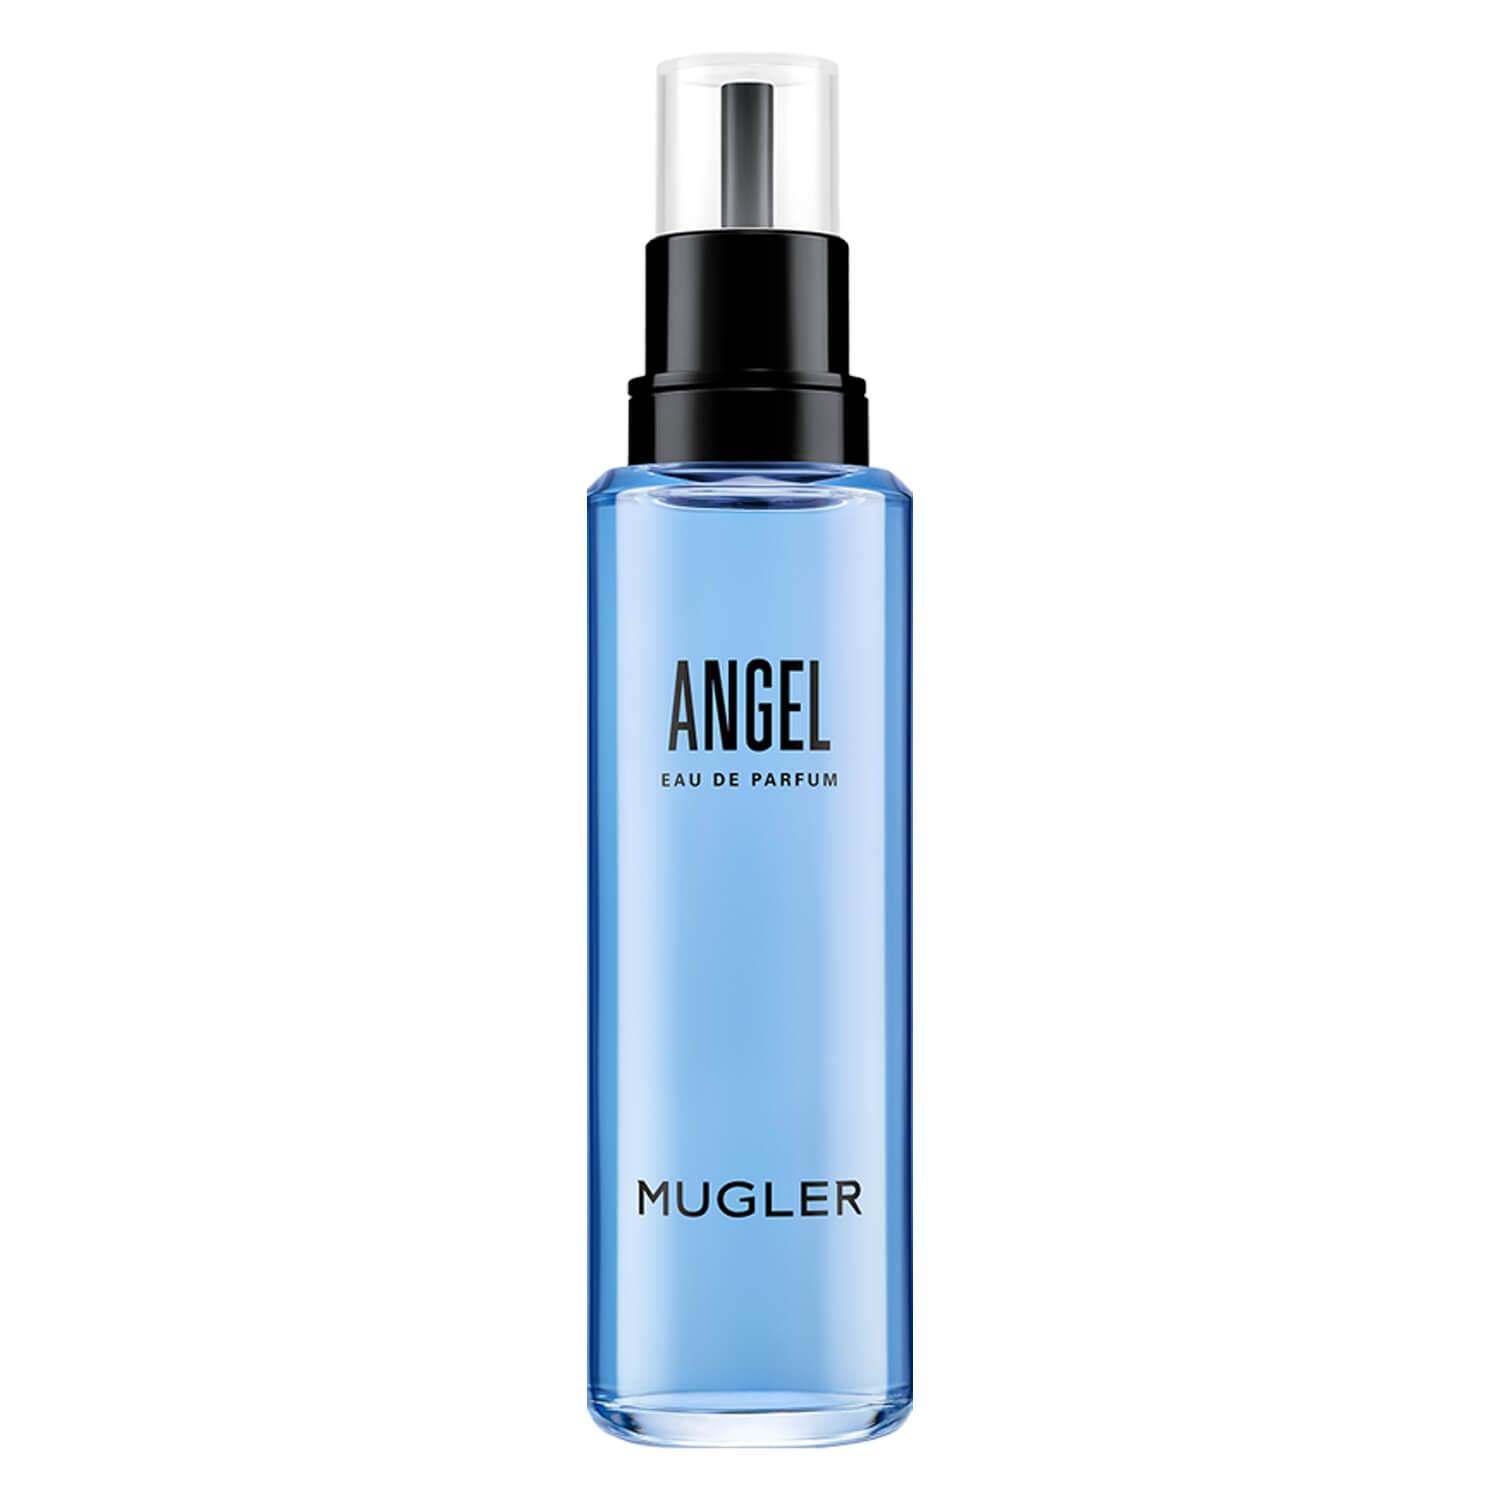 Angel - Shooting Star EdP Eco-Refill Bottle